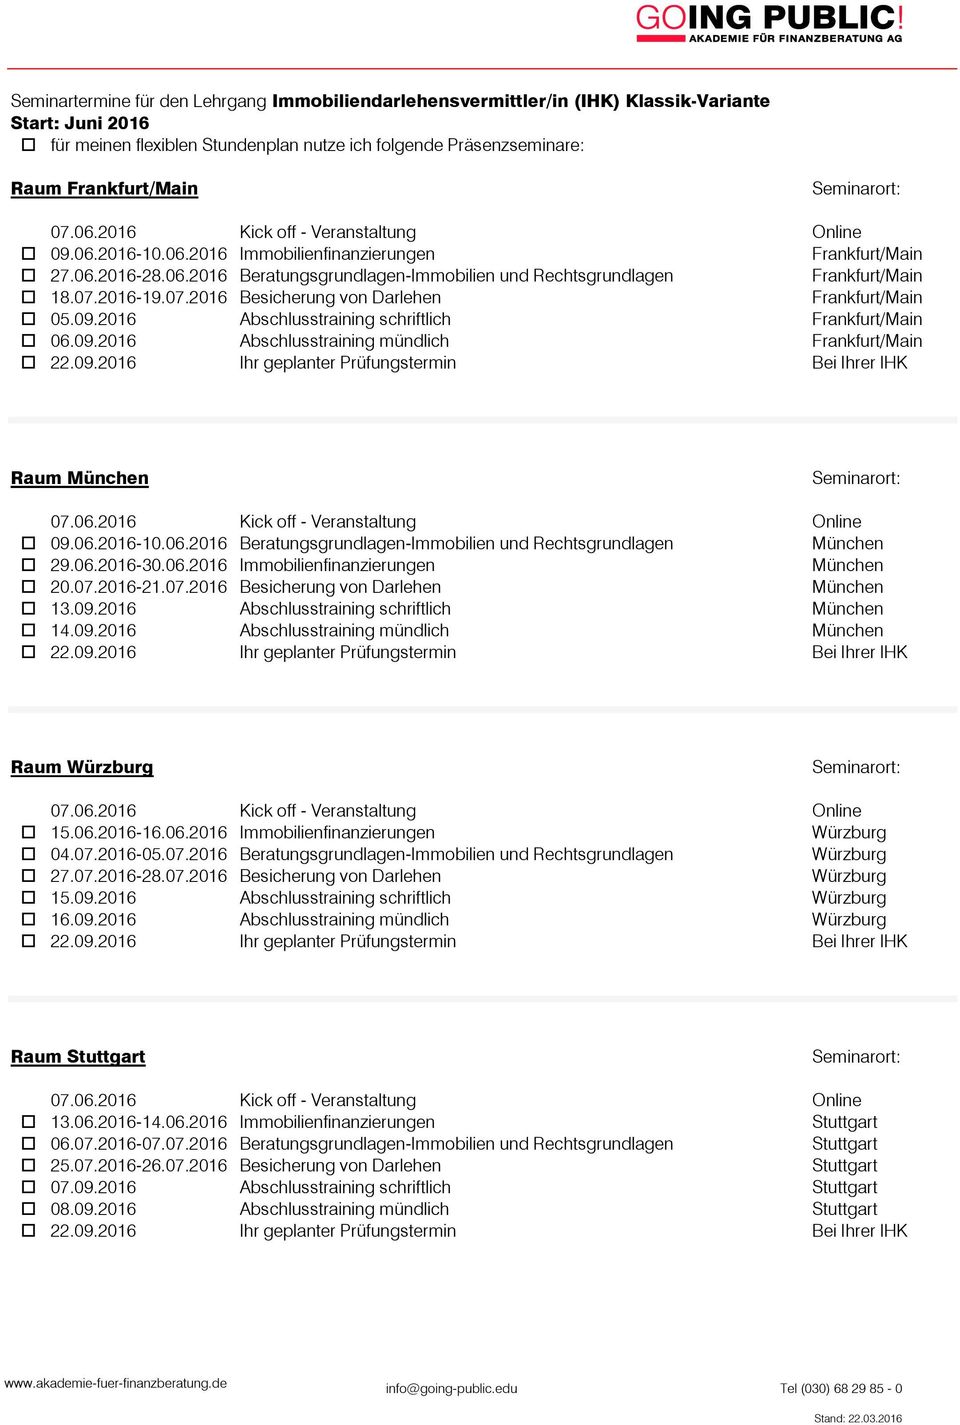 06.2016 Beratungsgrundlagen-Immobilien und Rechtsgrundlagen München o 29.06.2016-30.06.2016 Immobilienfinanzierungen München o 20.07.2016-21.07.2016 Besicherung von Darlehen München o 13.09.